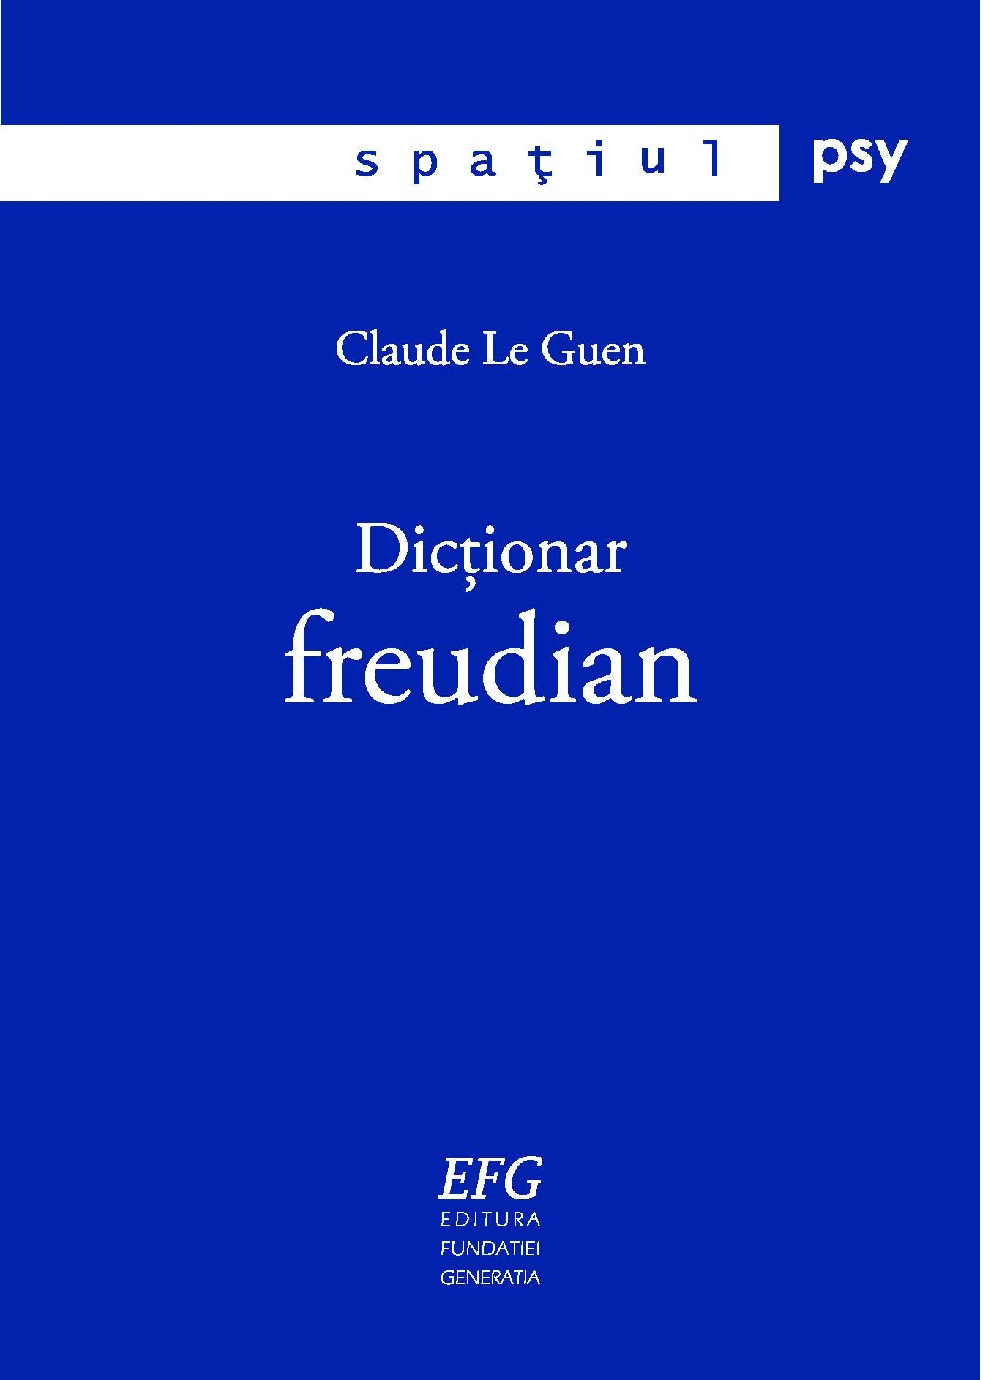 PDF Dictionar freudian | Claude Le Guen carturesti.ro Carte